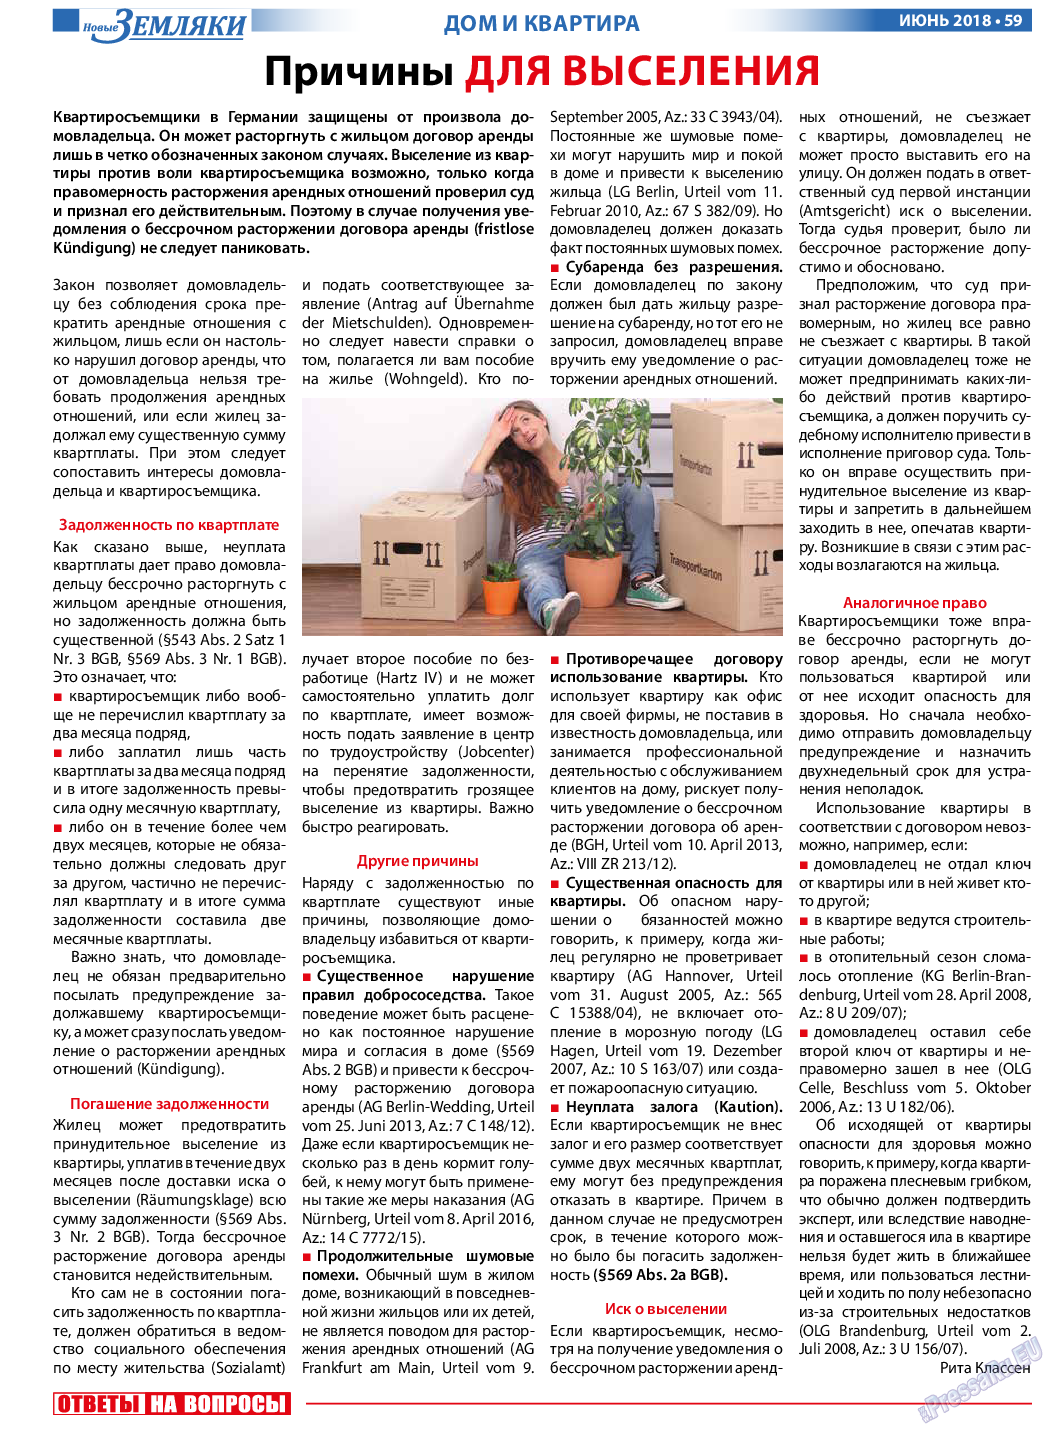 Новые Земляки, газета. 2018 №6 стр.59